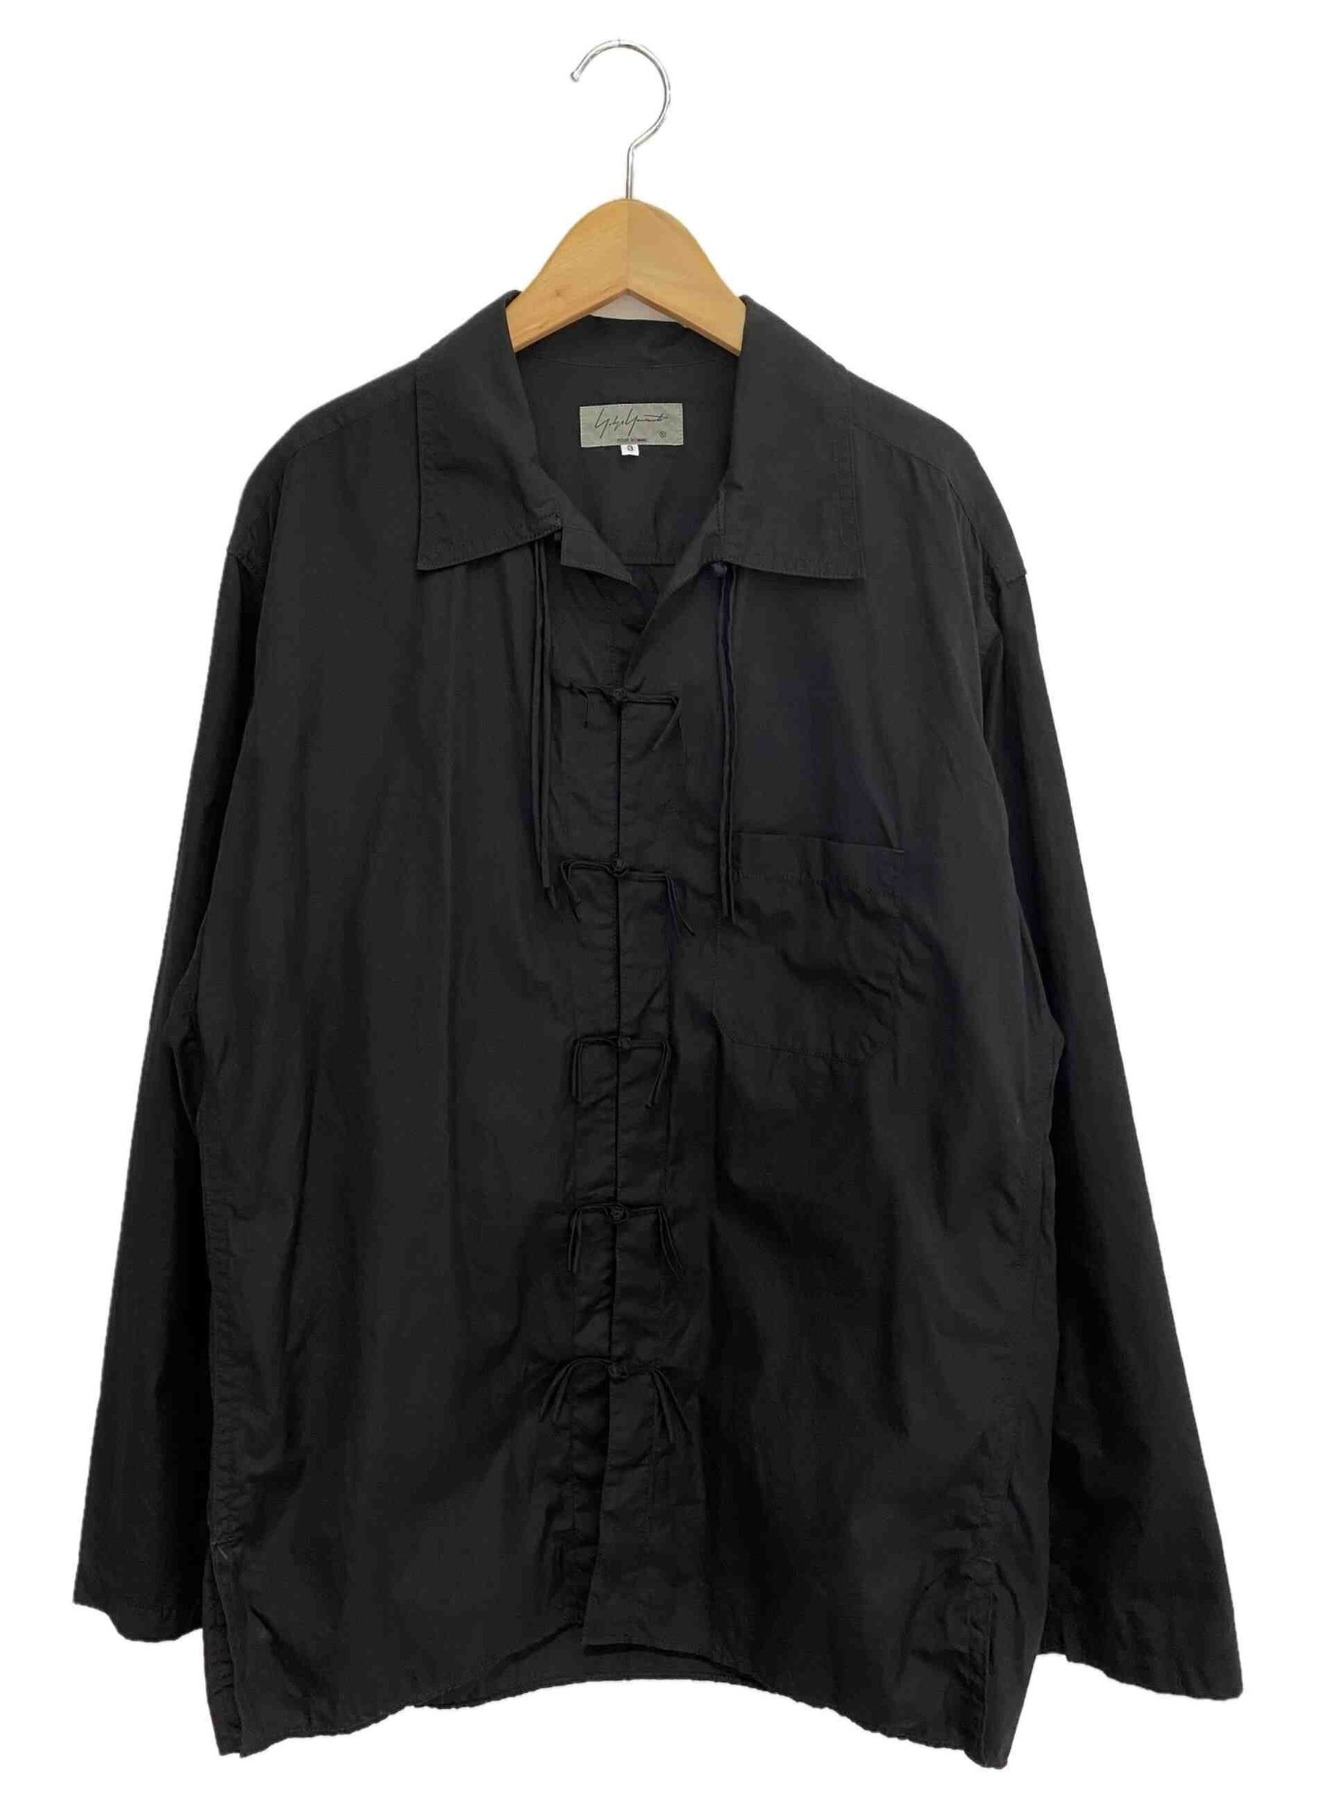 Yohji Yamamoto pour homme (ヨウジヤマモトプールオム) チャイナシャツ ブラック サイズ:3